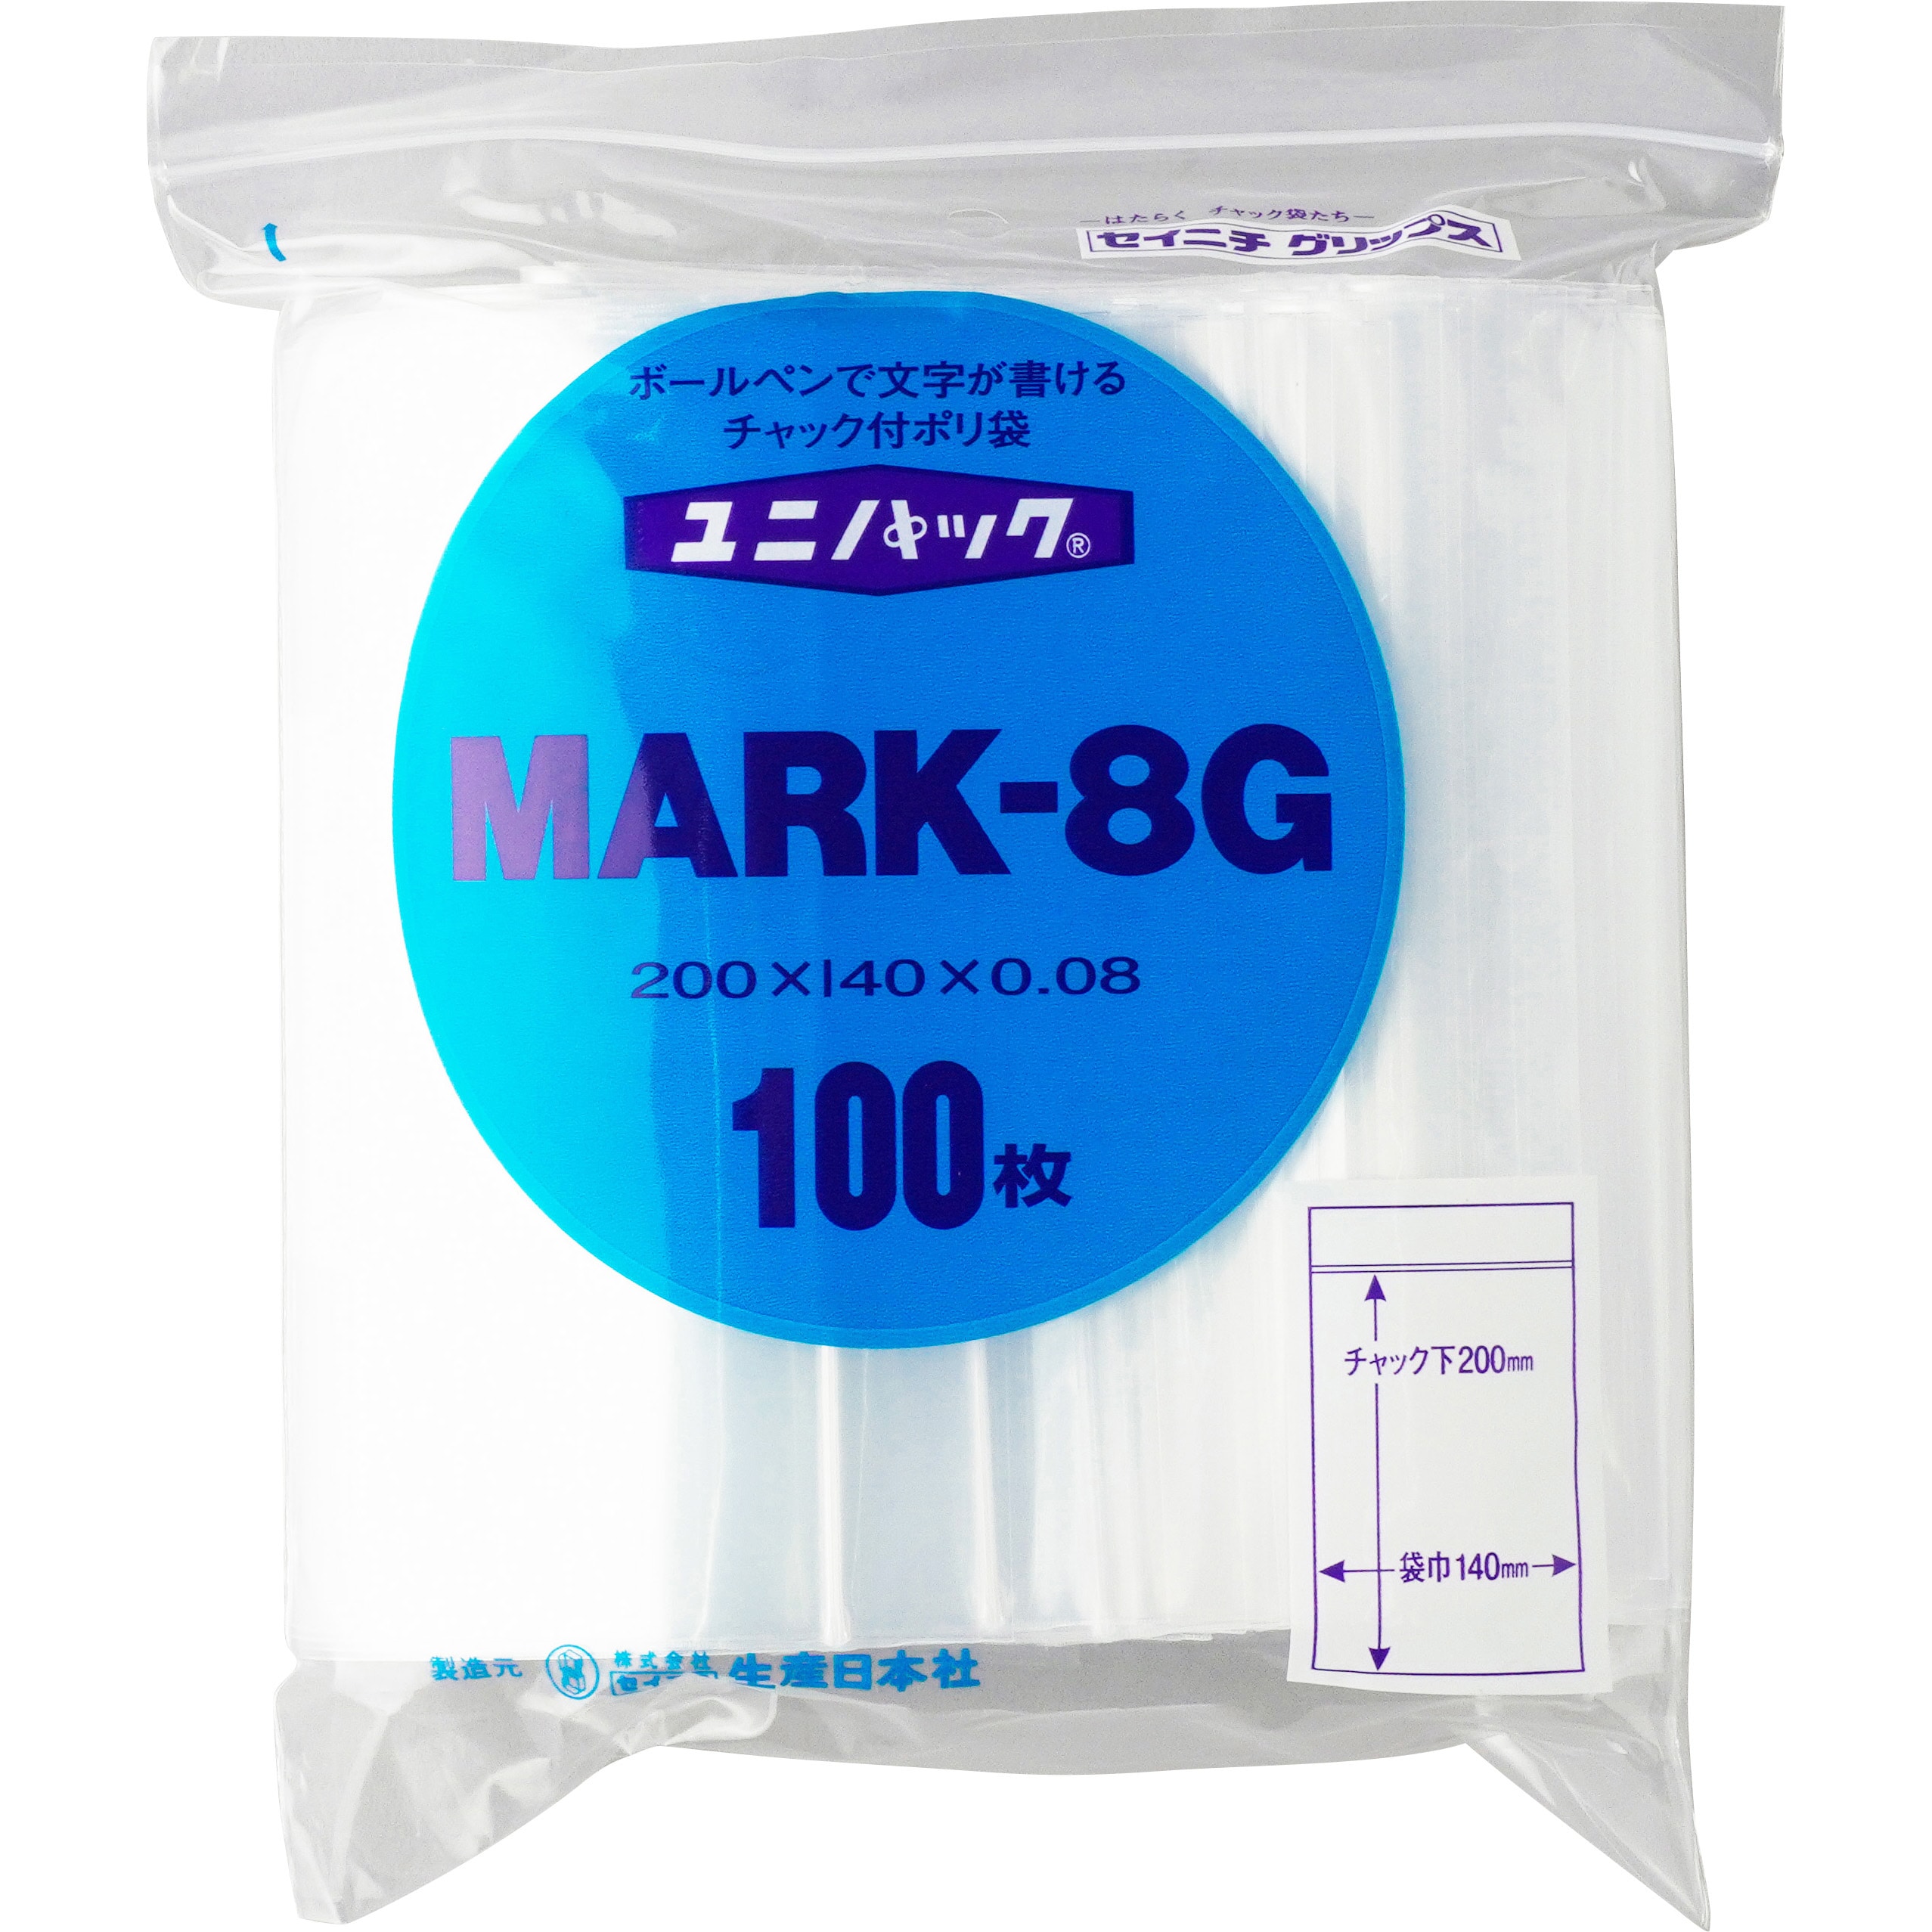 MARK8G ユニパック(チャック付ポリ袋) マーク 1袋(100枚) セイニチ(生産日本社) 【通販サイトMonotaRO】